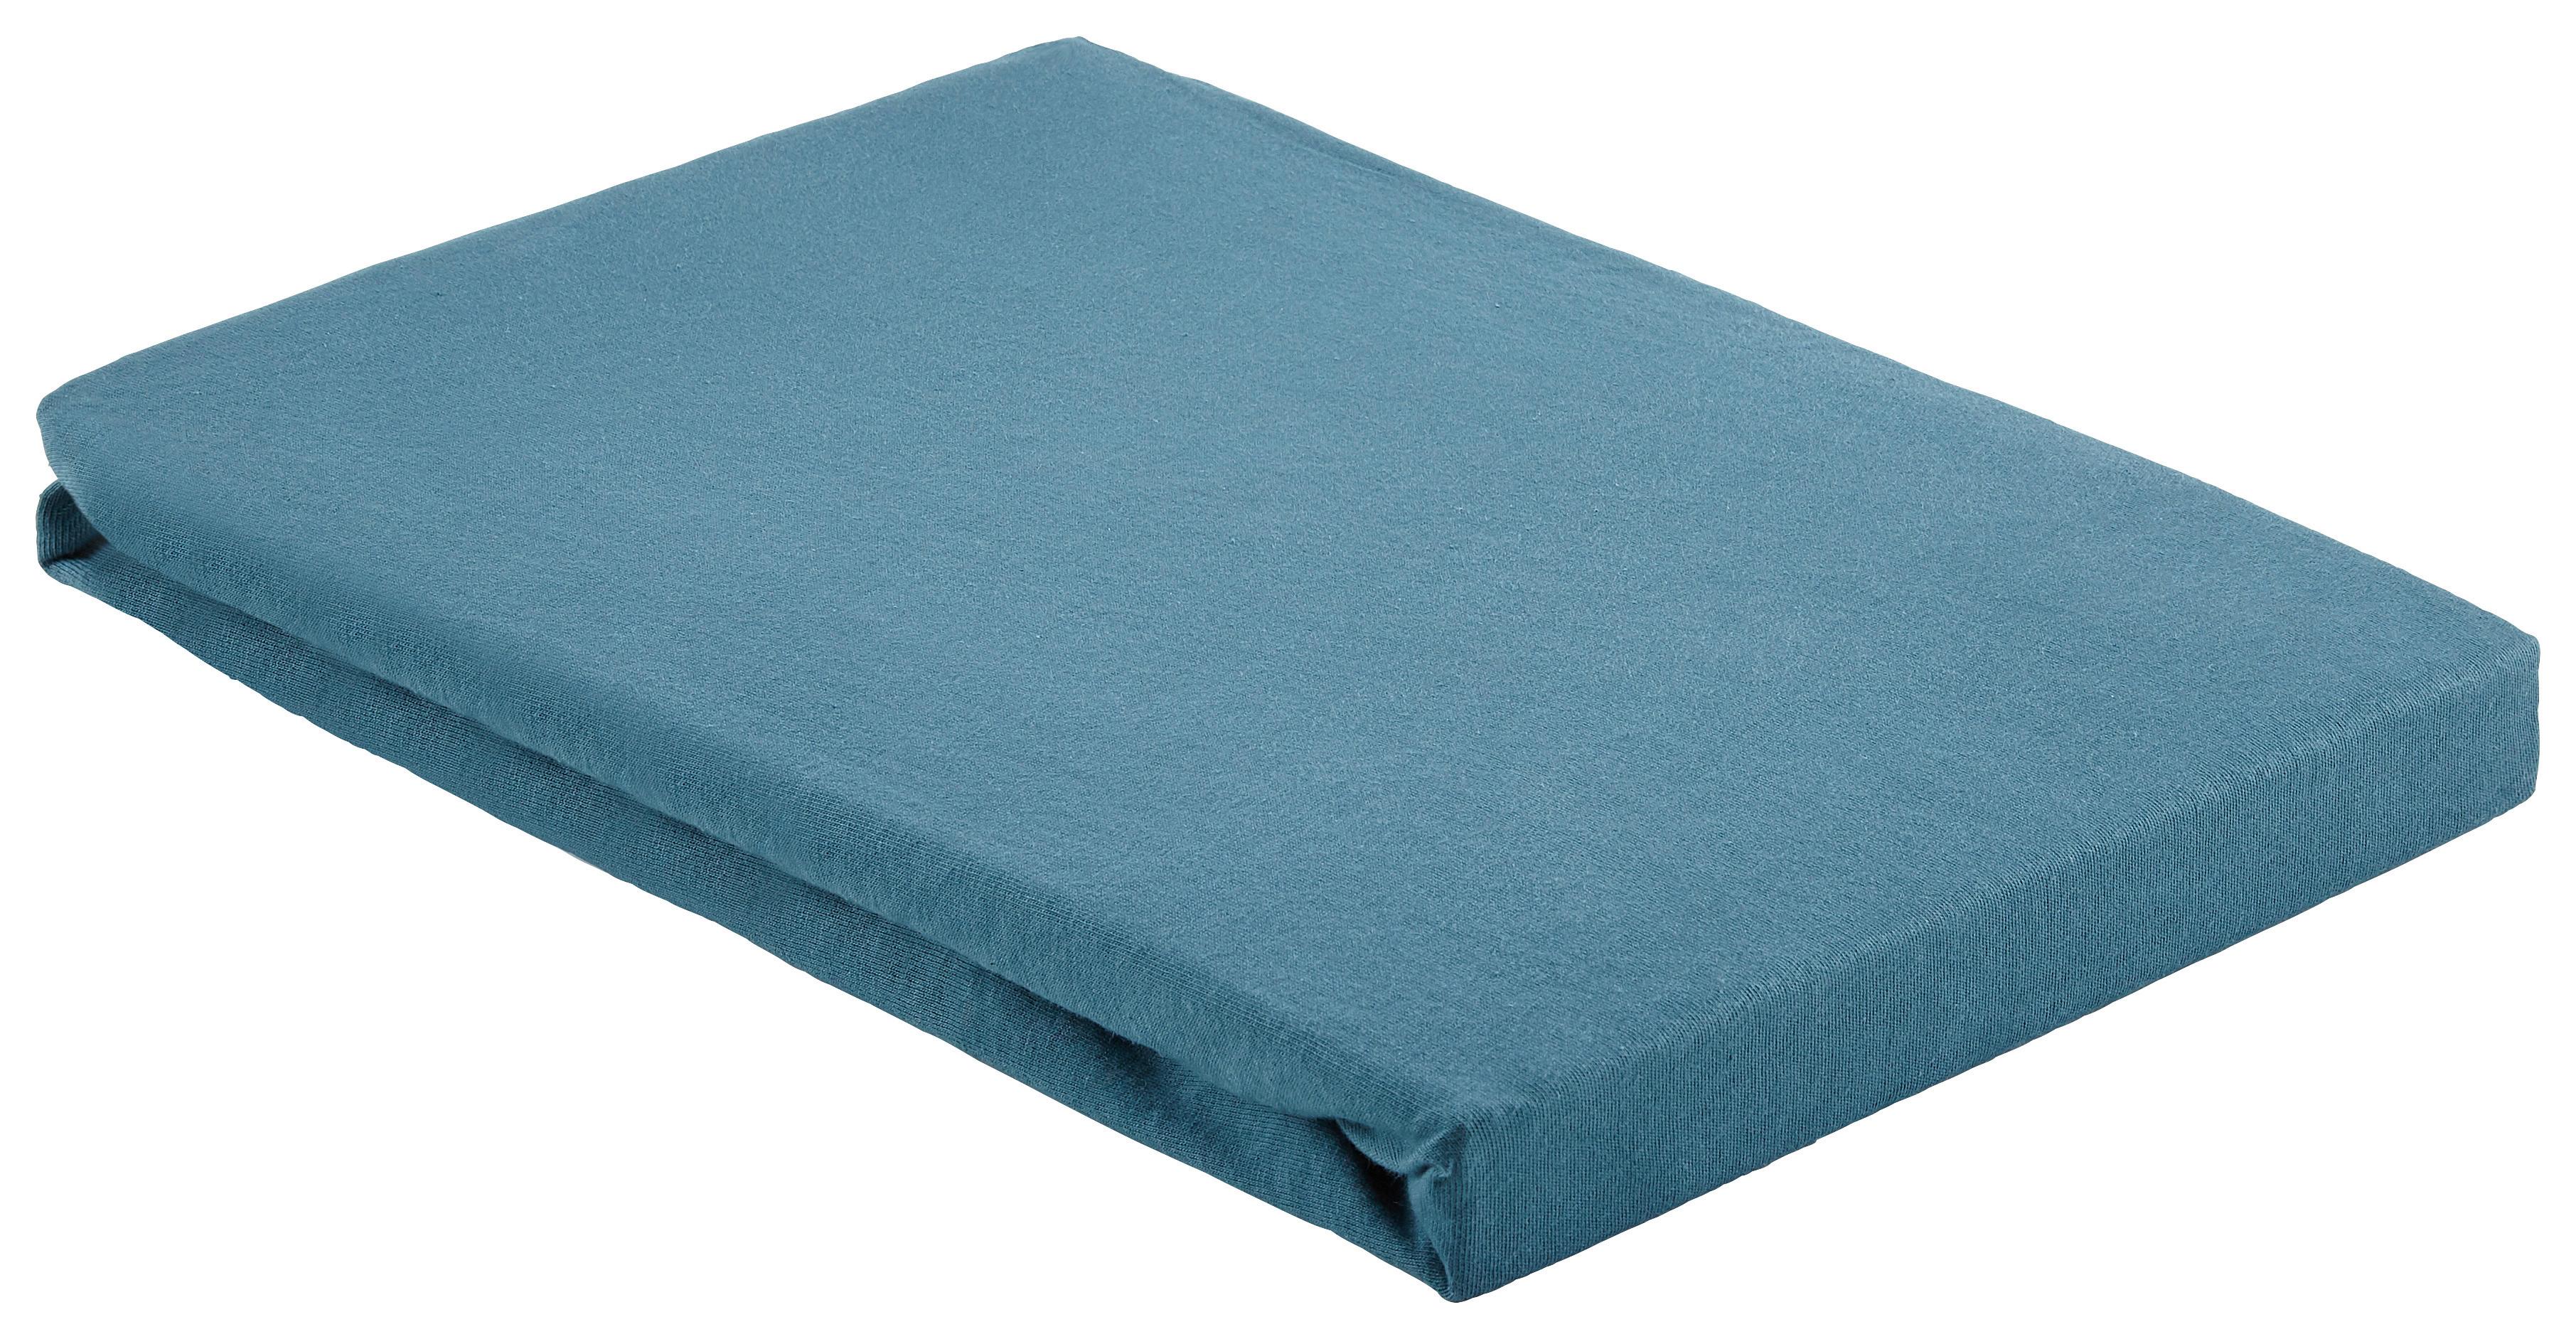 Elastické Prostěradlo Basic, 100/200cm, Modrá - modrá, textil (100/200cm) - Modern Living